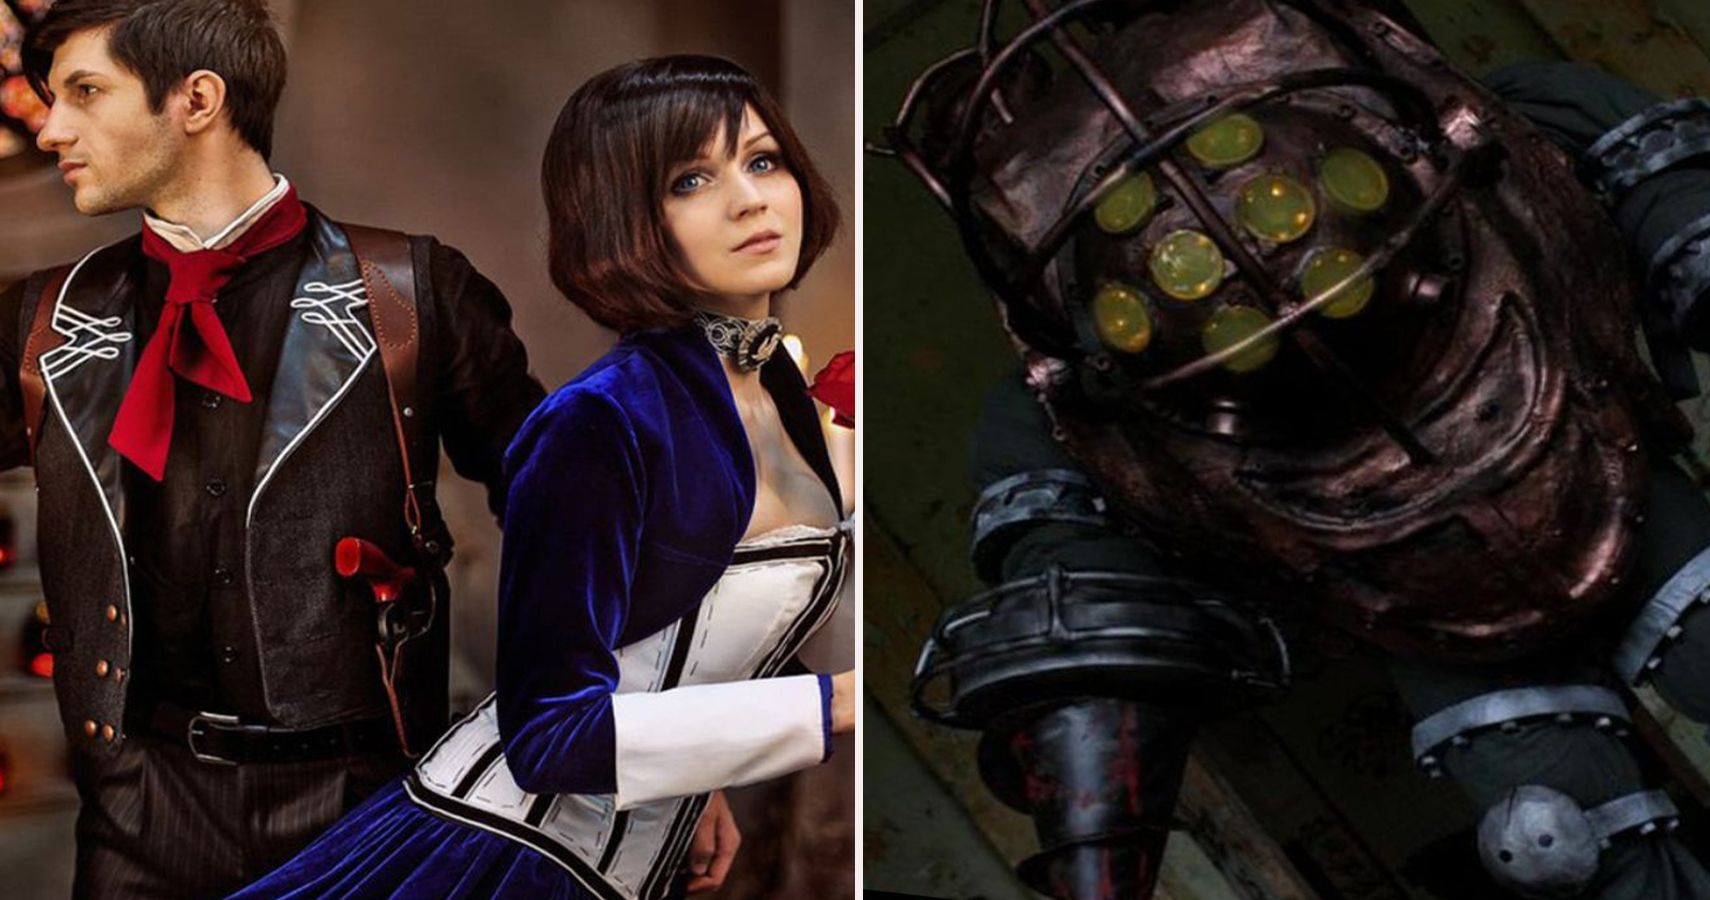 My Elizabeth cosplay vs character - Bioshock Infinite : r/gaming